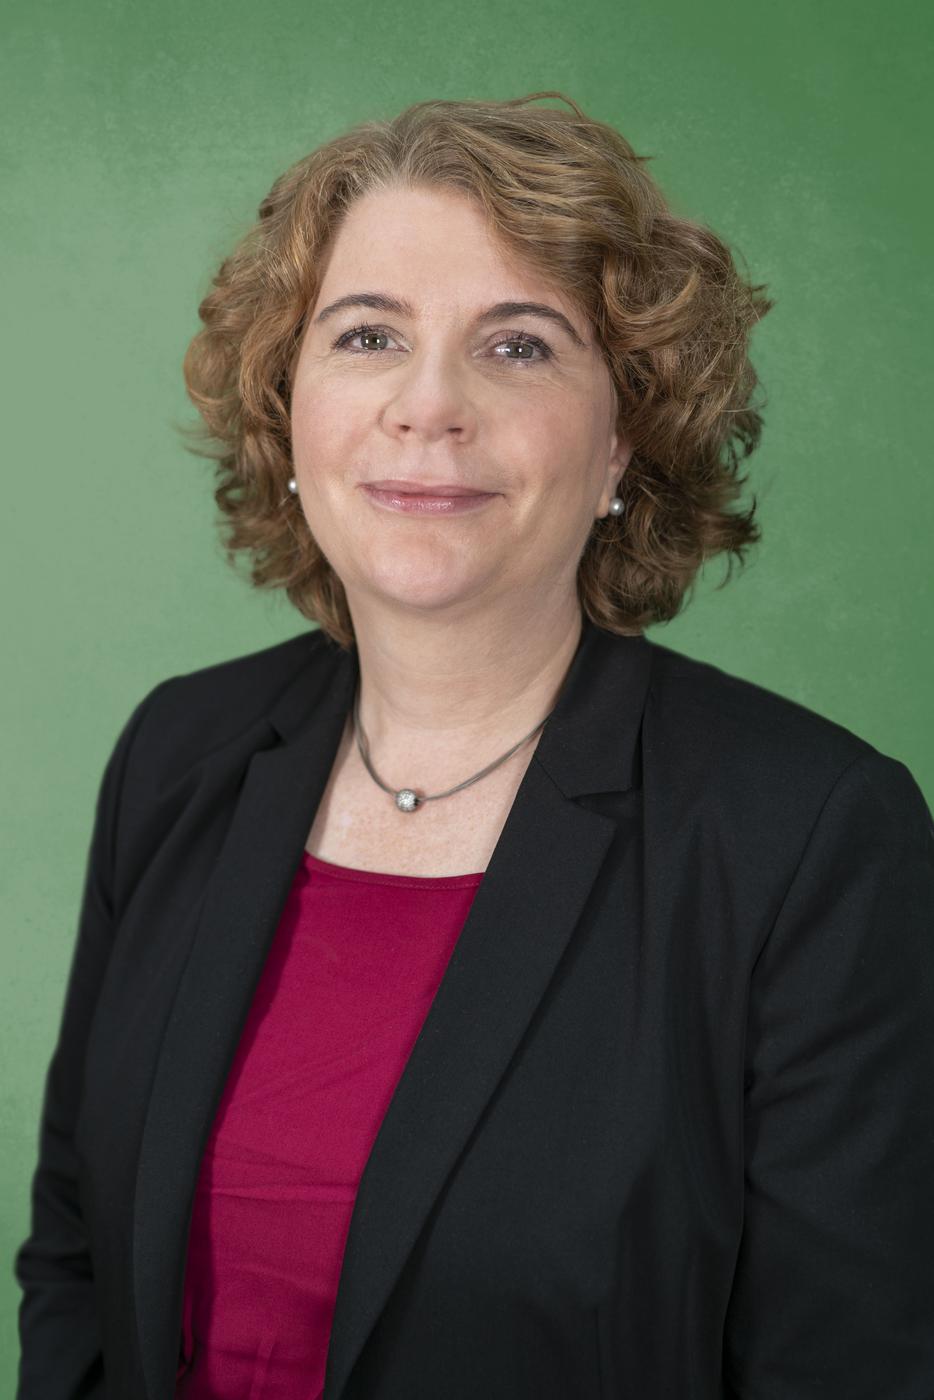 Nicole Heger - Kandidatin der Grünen für den Wahlkreis Bruchsal Landtagswahl 2021